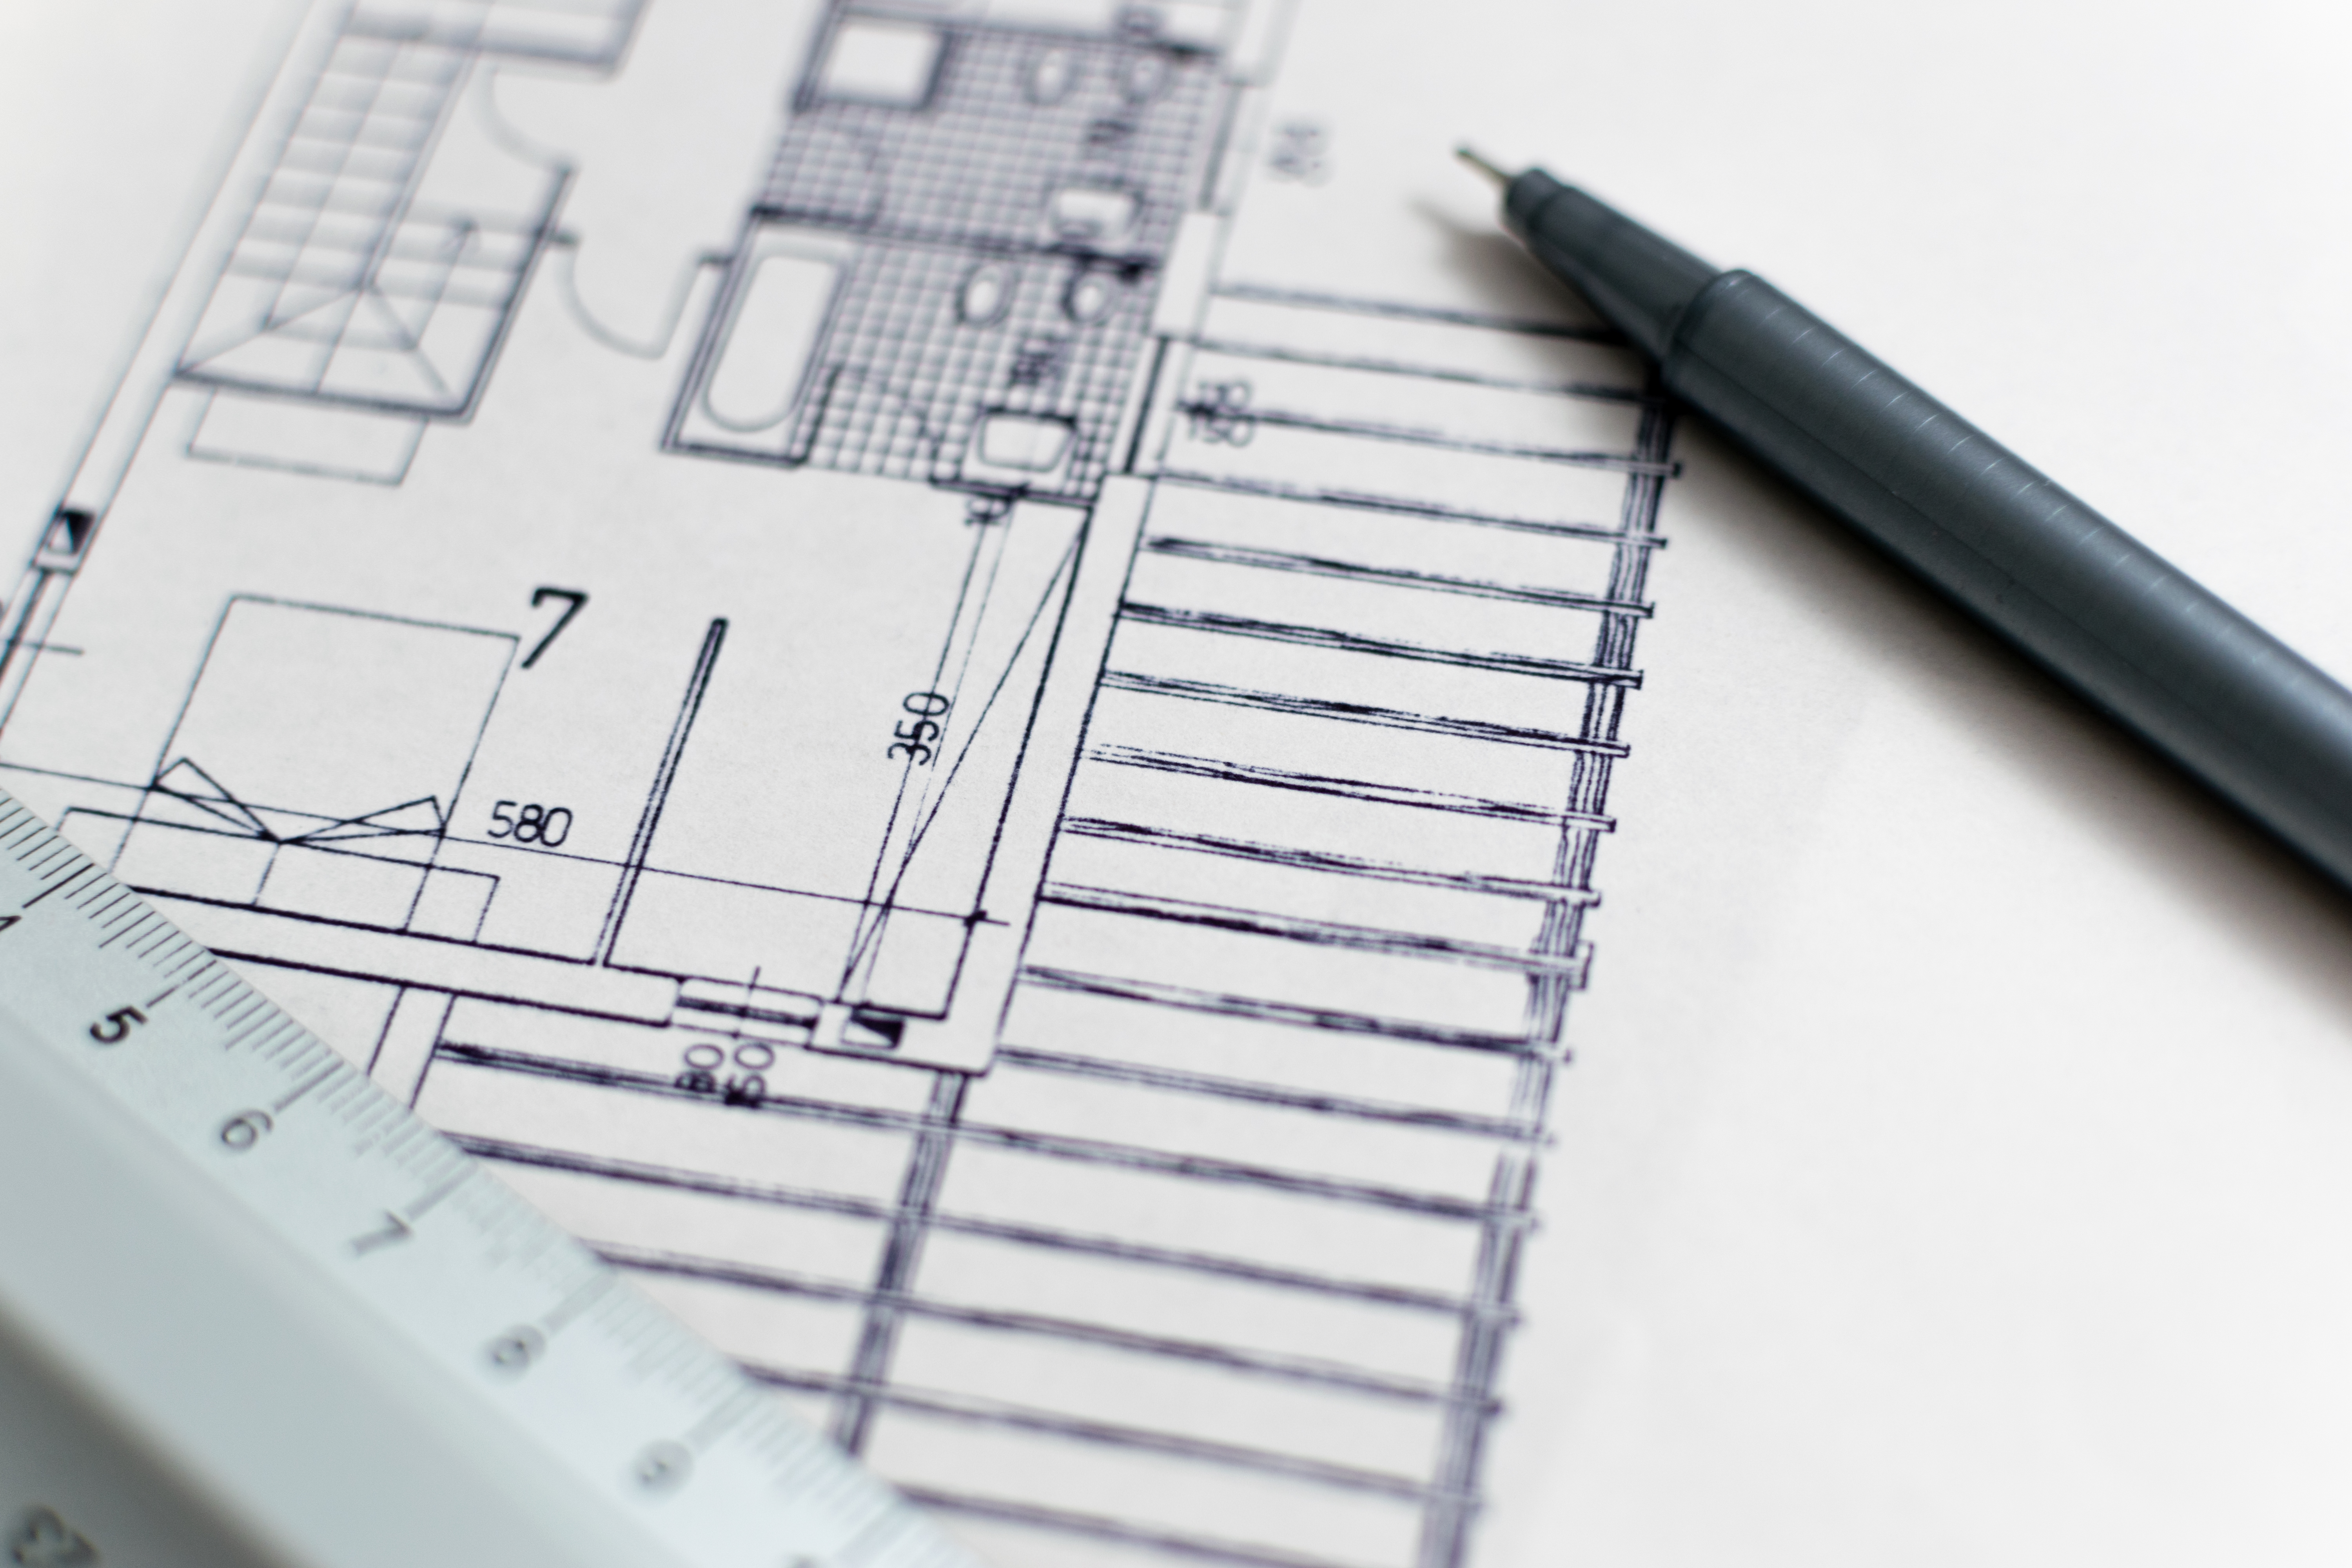 Kế hoạch kiến trúc (Architecture blueprint): Hãy tìm hiểu về kế hoạch kiến trúc đầy mê hoặc này! Với những chi tiết tỉ mỉ và tầm nhìn tuyệt vời, bản vẽ kiến trúc này sẽ cho bạn cái nhìn toàn cảnh về các đặc điểm nổi bật của công trình.